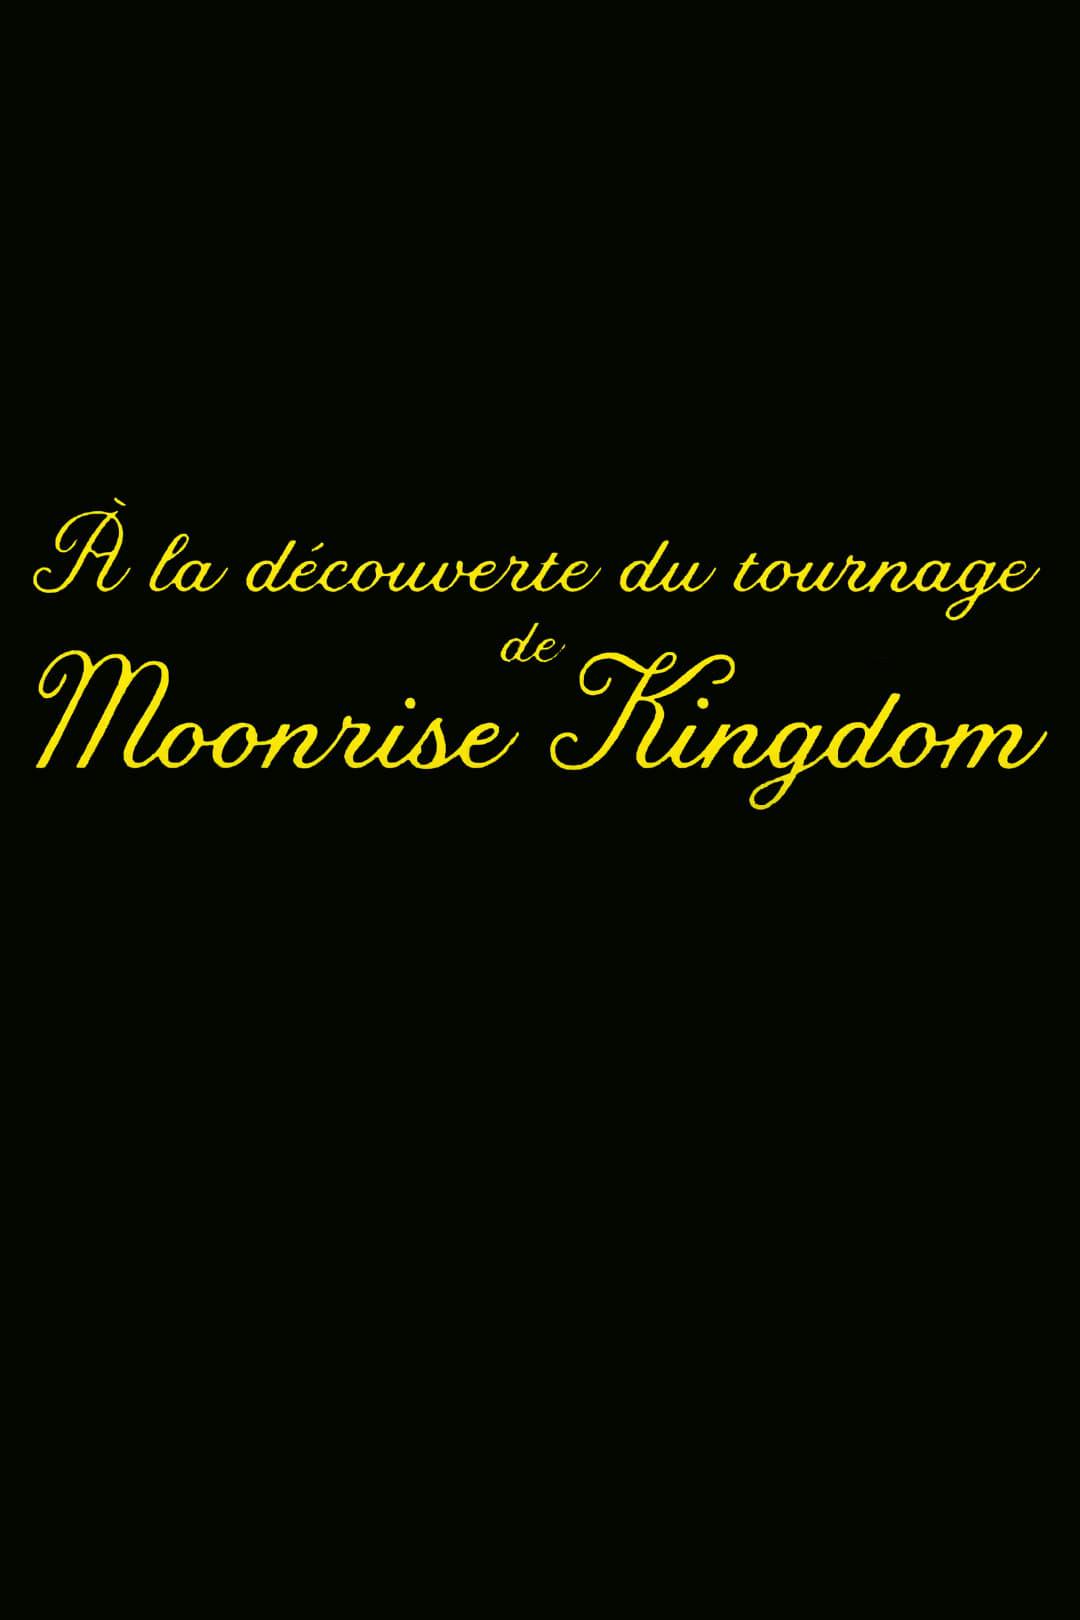 À la découverte du tournage de Moonrise Kingdom poster